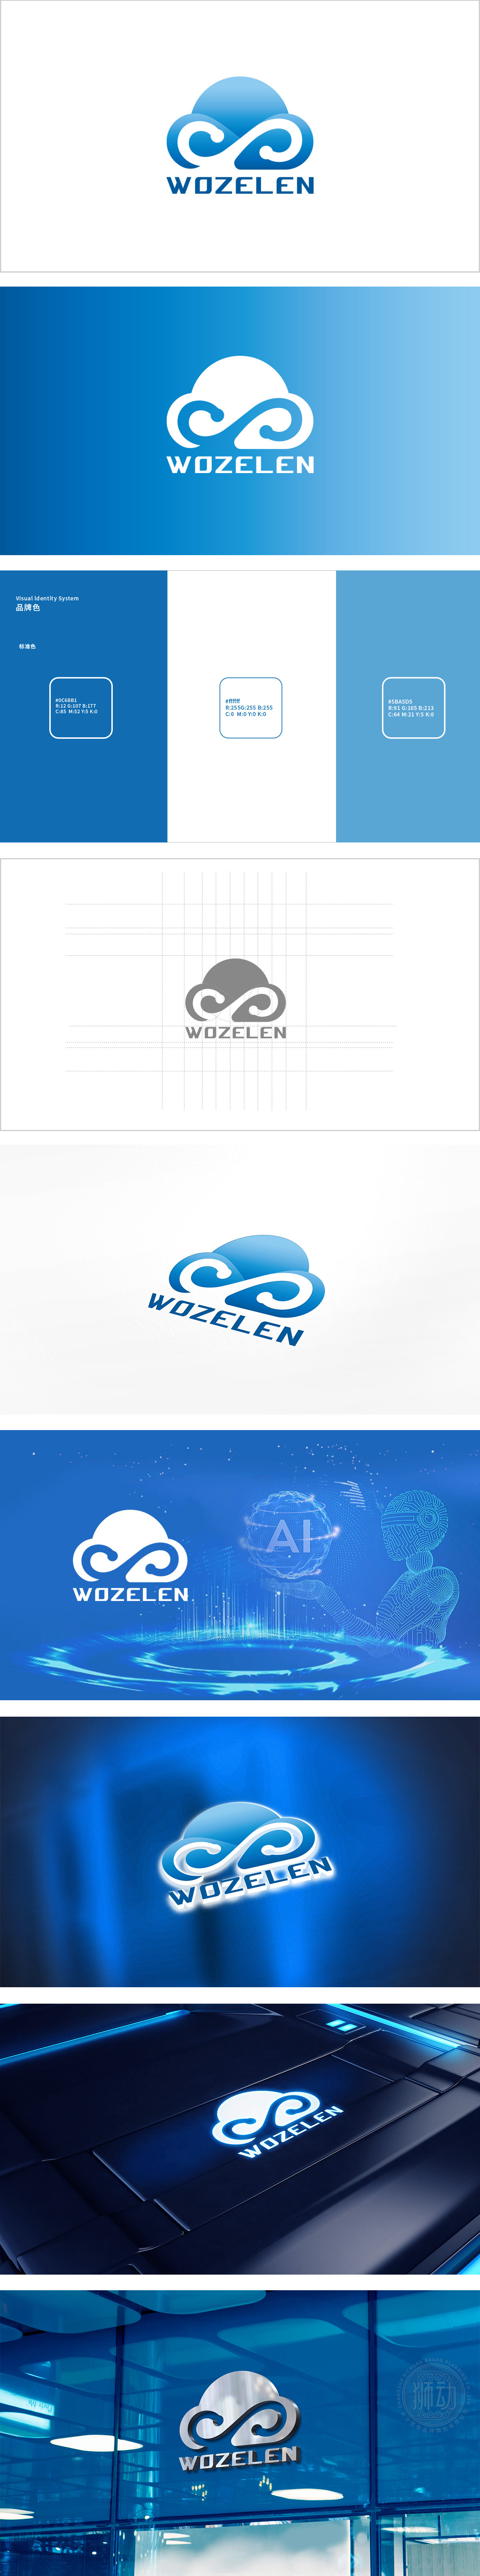 wozelenIT软件研发LOGO设计